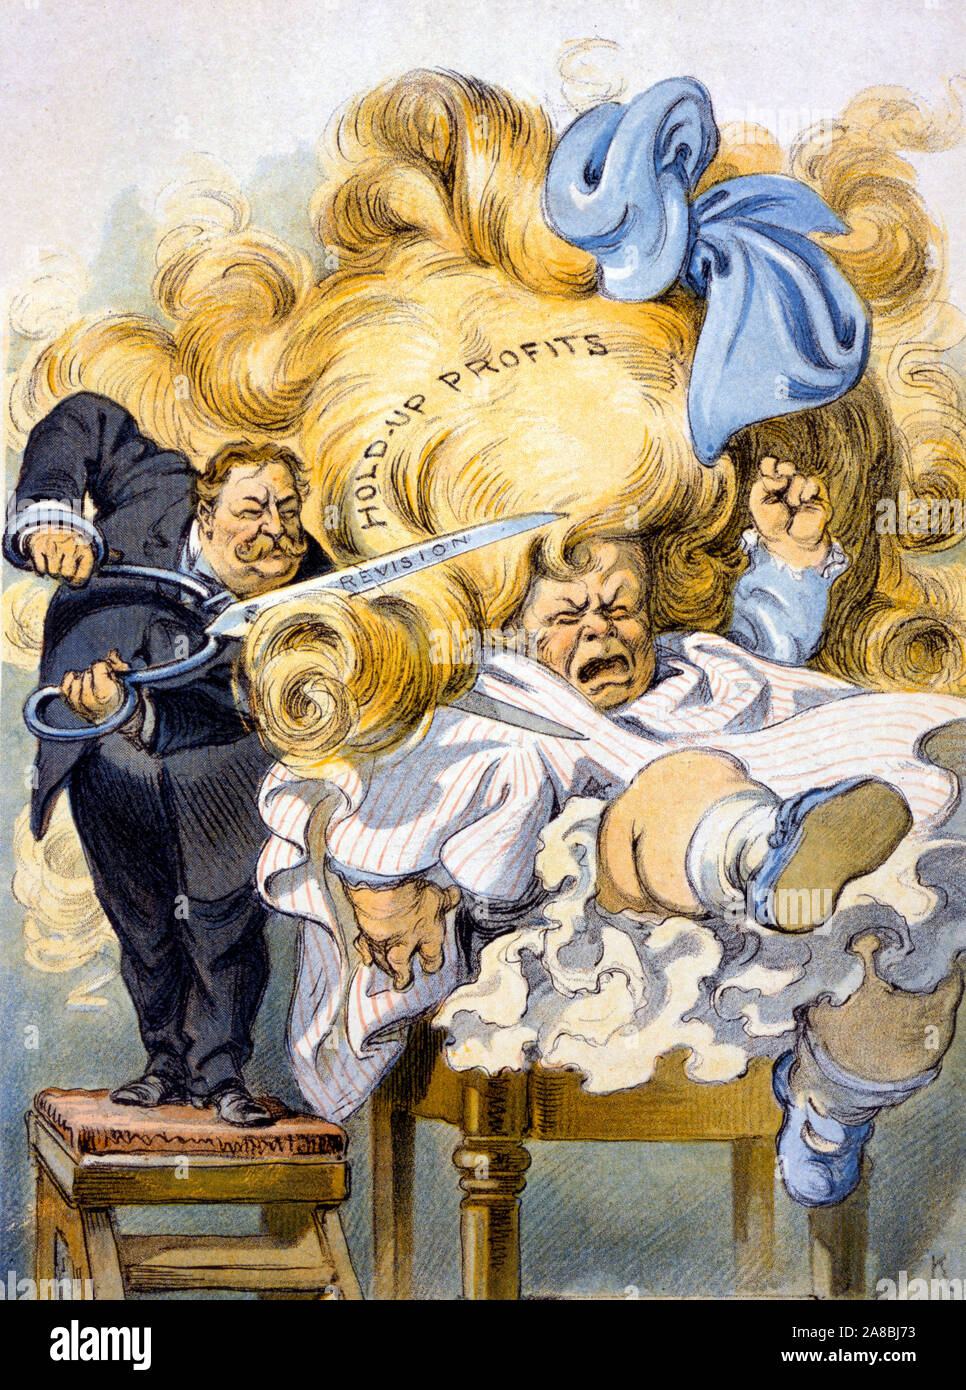 Trimmen der verwöhnte Liebling - William Howard Taft, der obersten kicken! Ich deinen Kopf ab!', wie er schneidet lange Locken Mädchen "Hold-up Gewinne", mit einer Schere 'revision." Politische Karikatur, 1909 Stockfoto